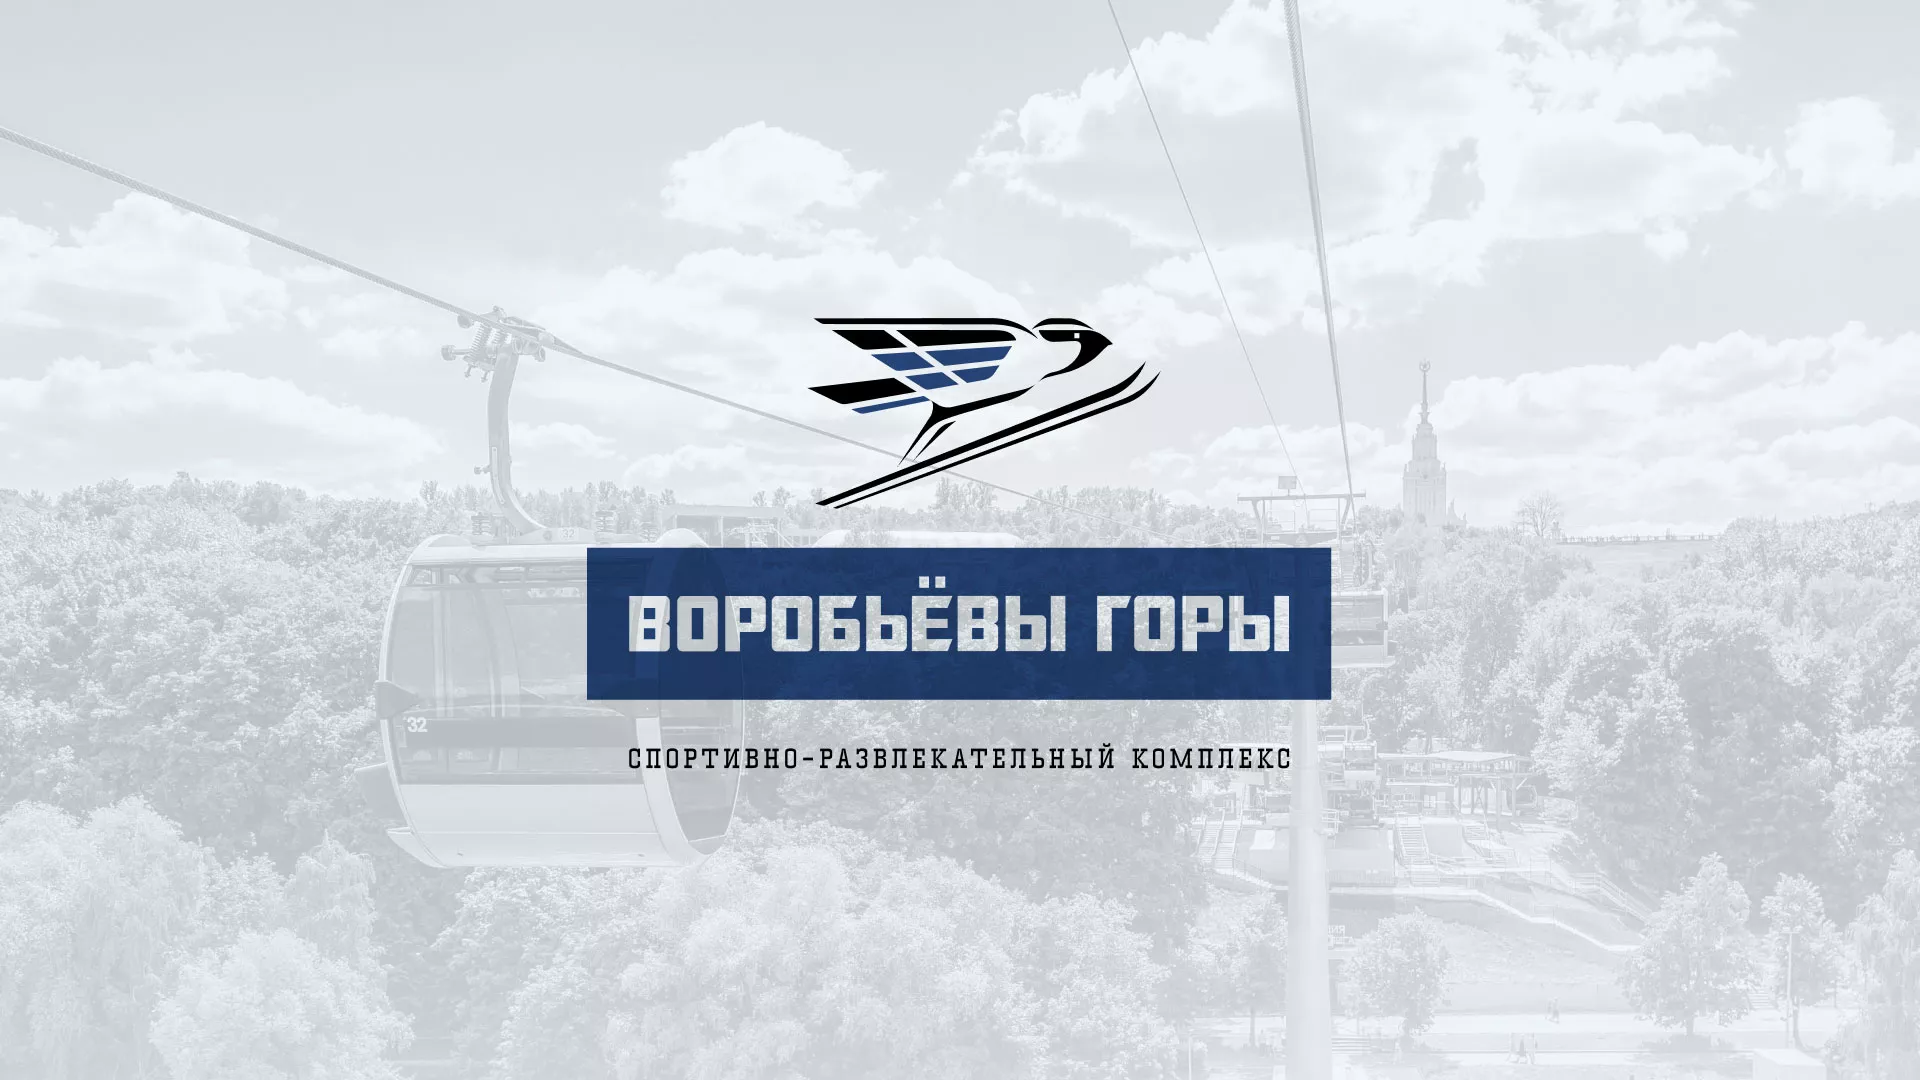 Разработка сайта в Медвежьегорске для спортивно-развлекательного комплекса «Воробьёвы горы»